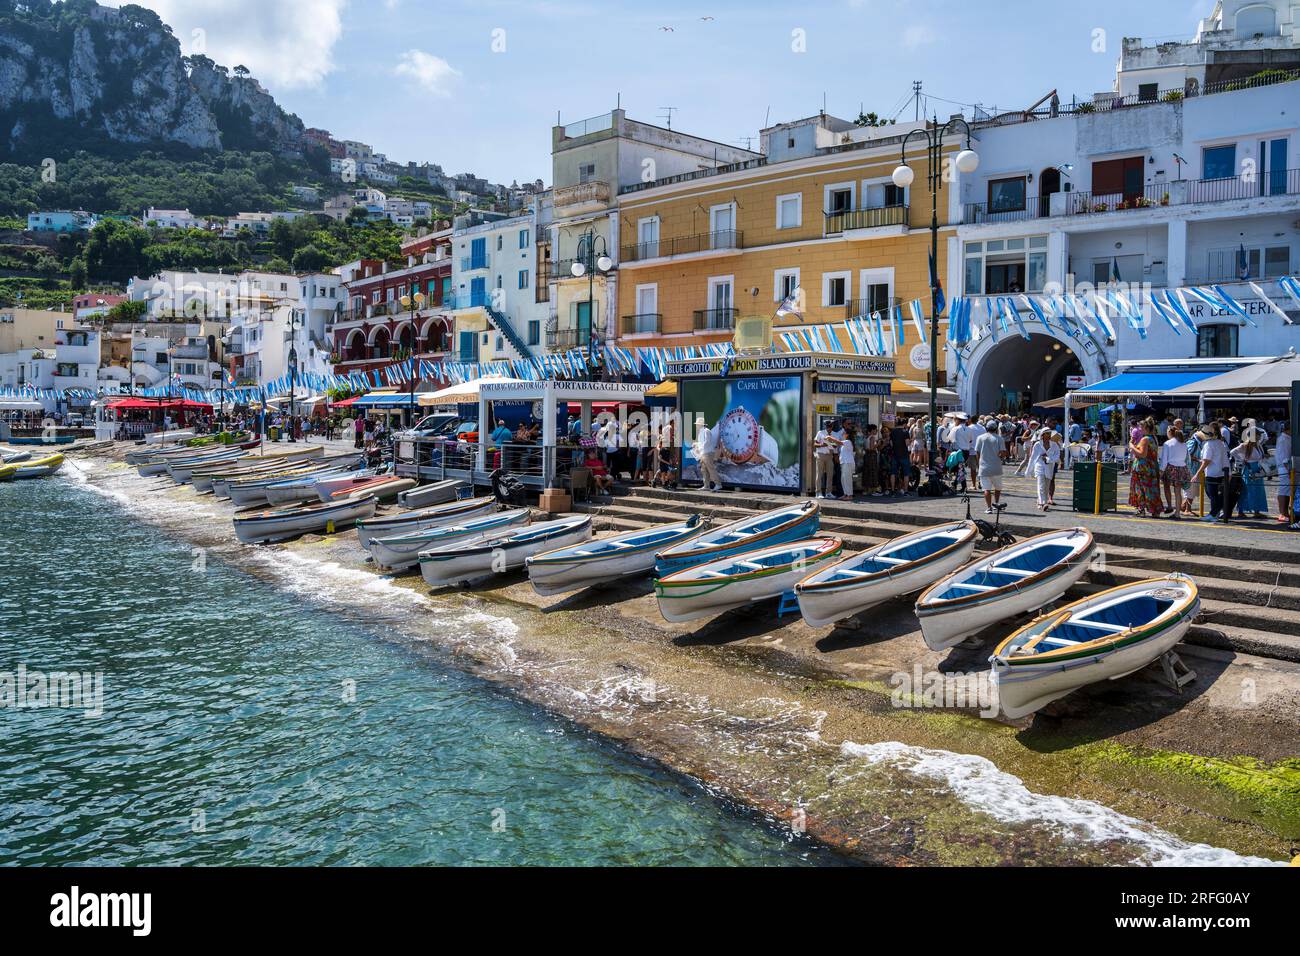 Marina Grande Ufer auf der Insel Capri im Golf von Neapel vor der Halbinsel Sorrent in der Region Kampanien in Italien Stockfoto